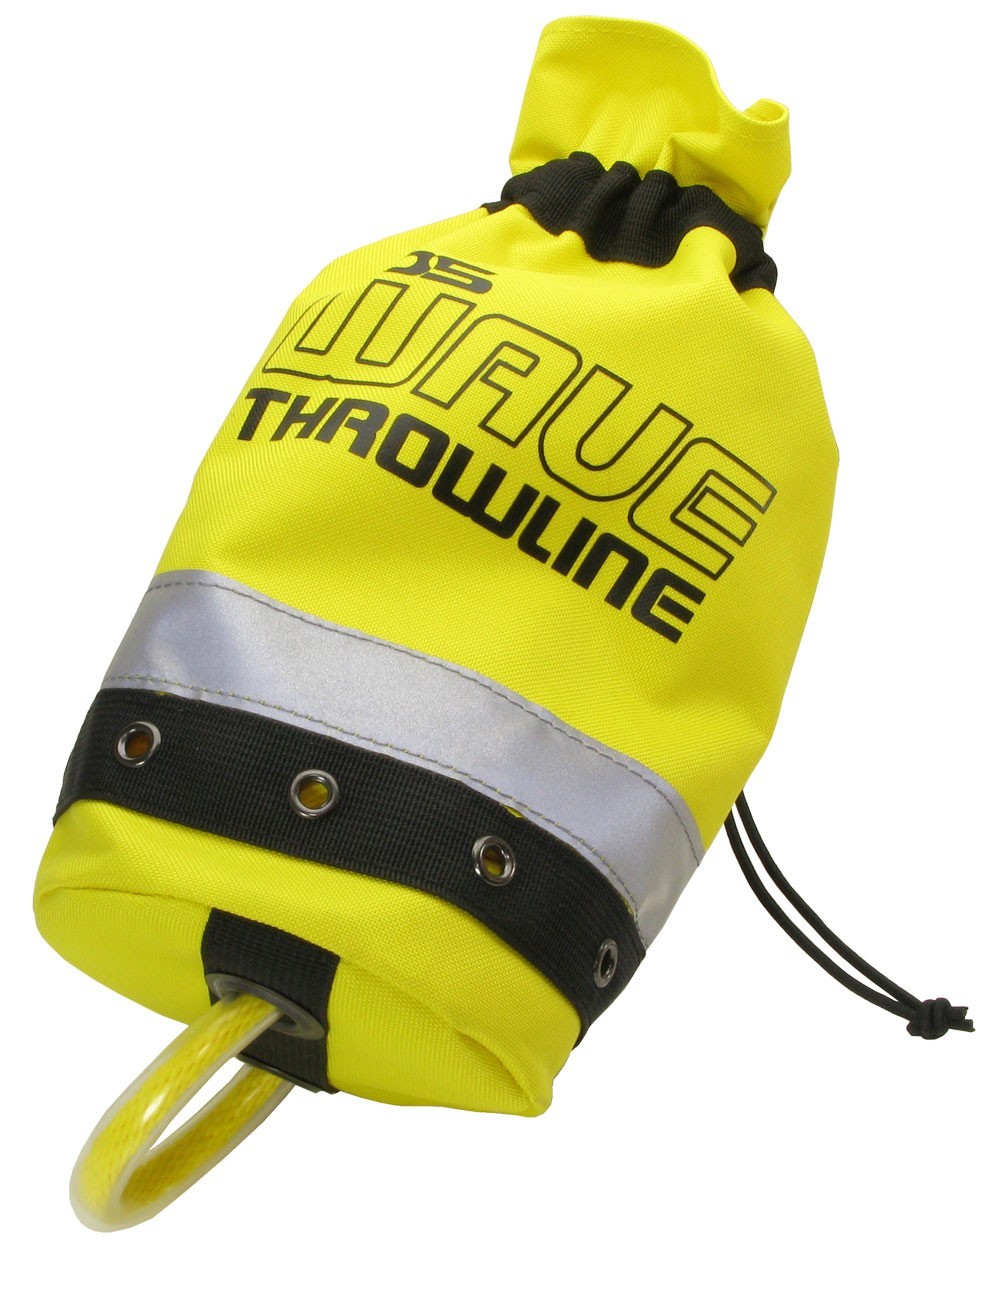 Elite PARAMEDS Rescue Tactical Backpack Medical Emergency Bag Royal Bl –  Super B Blus Group Ltd